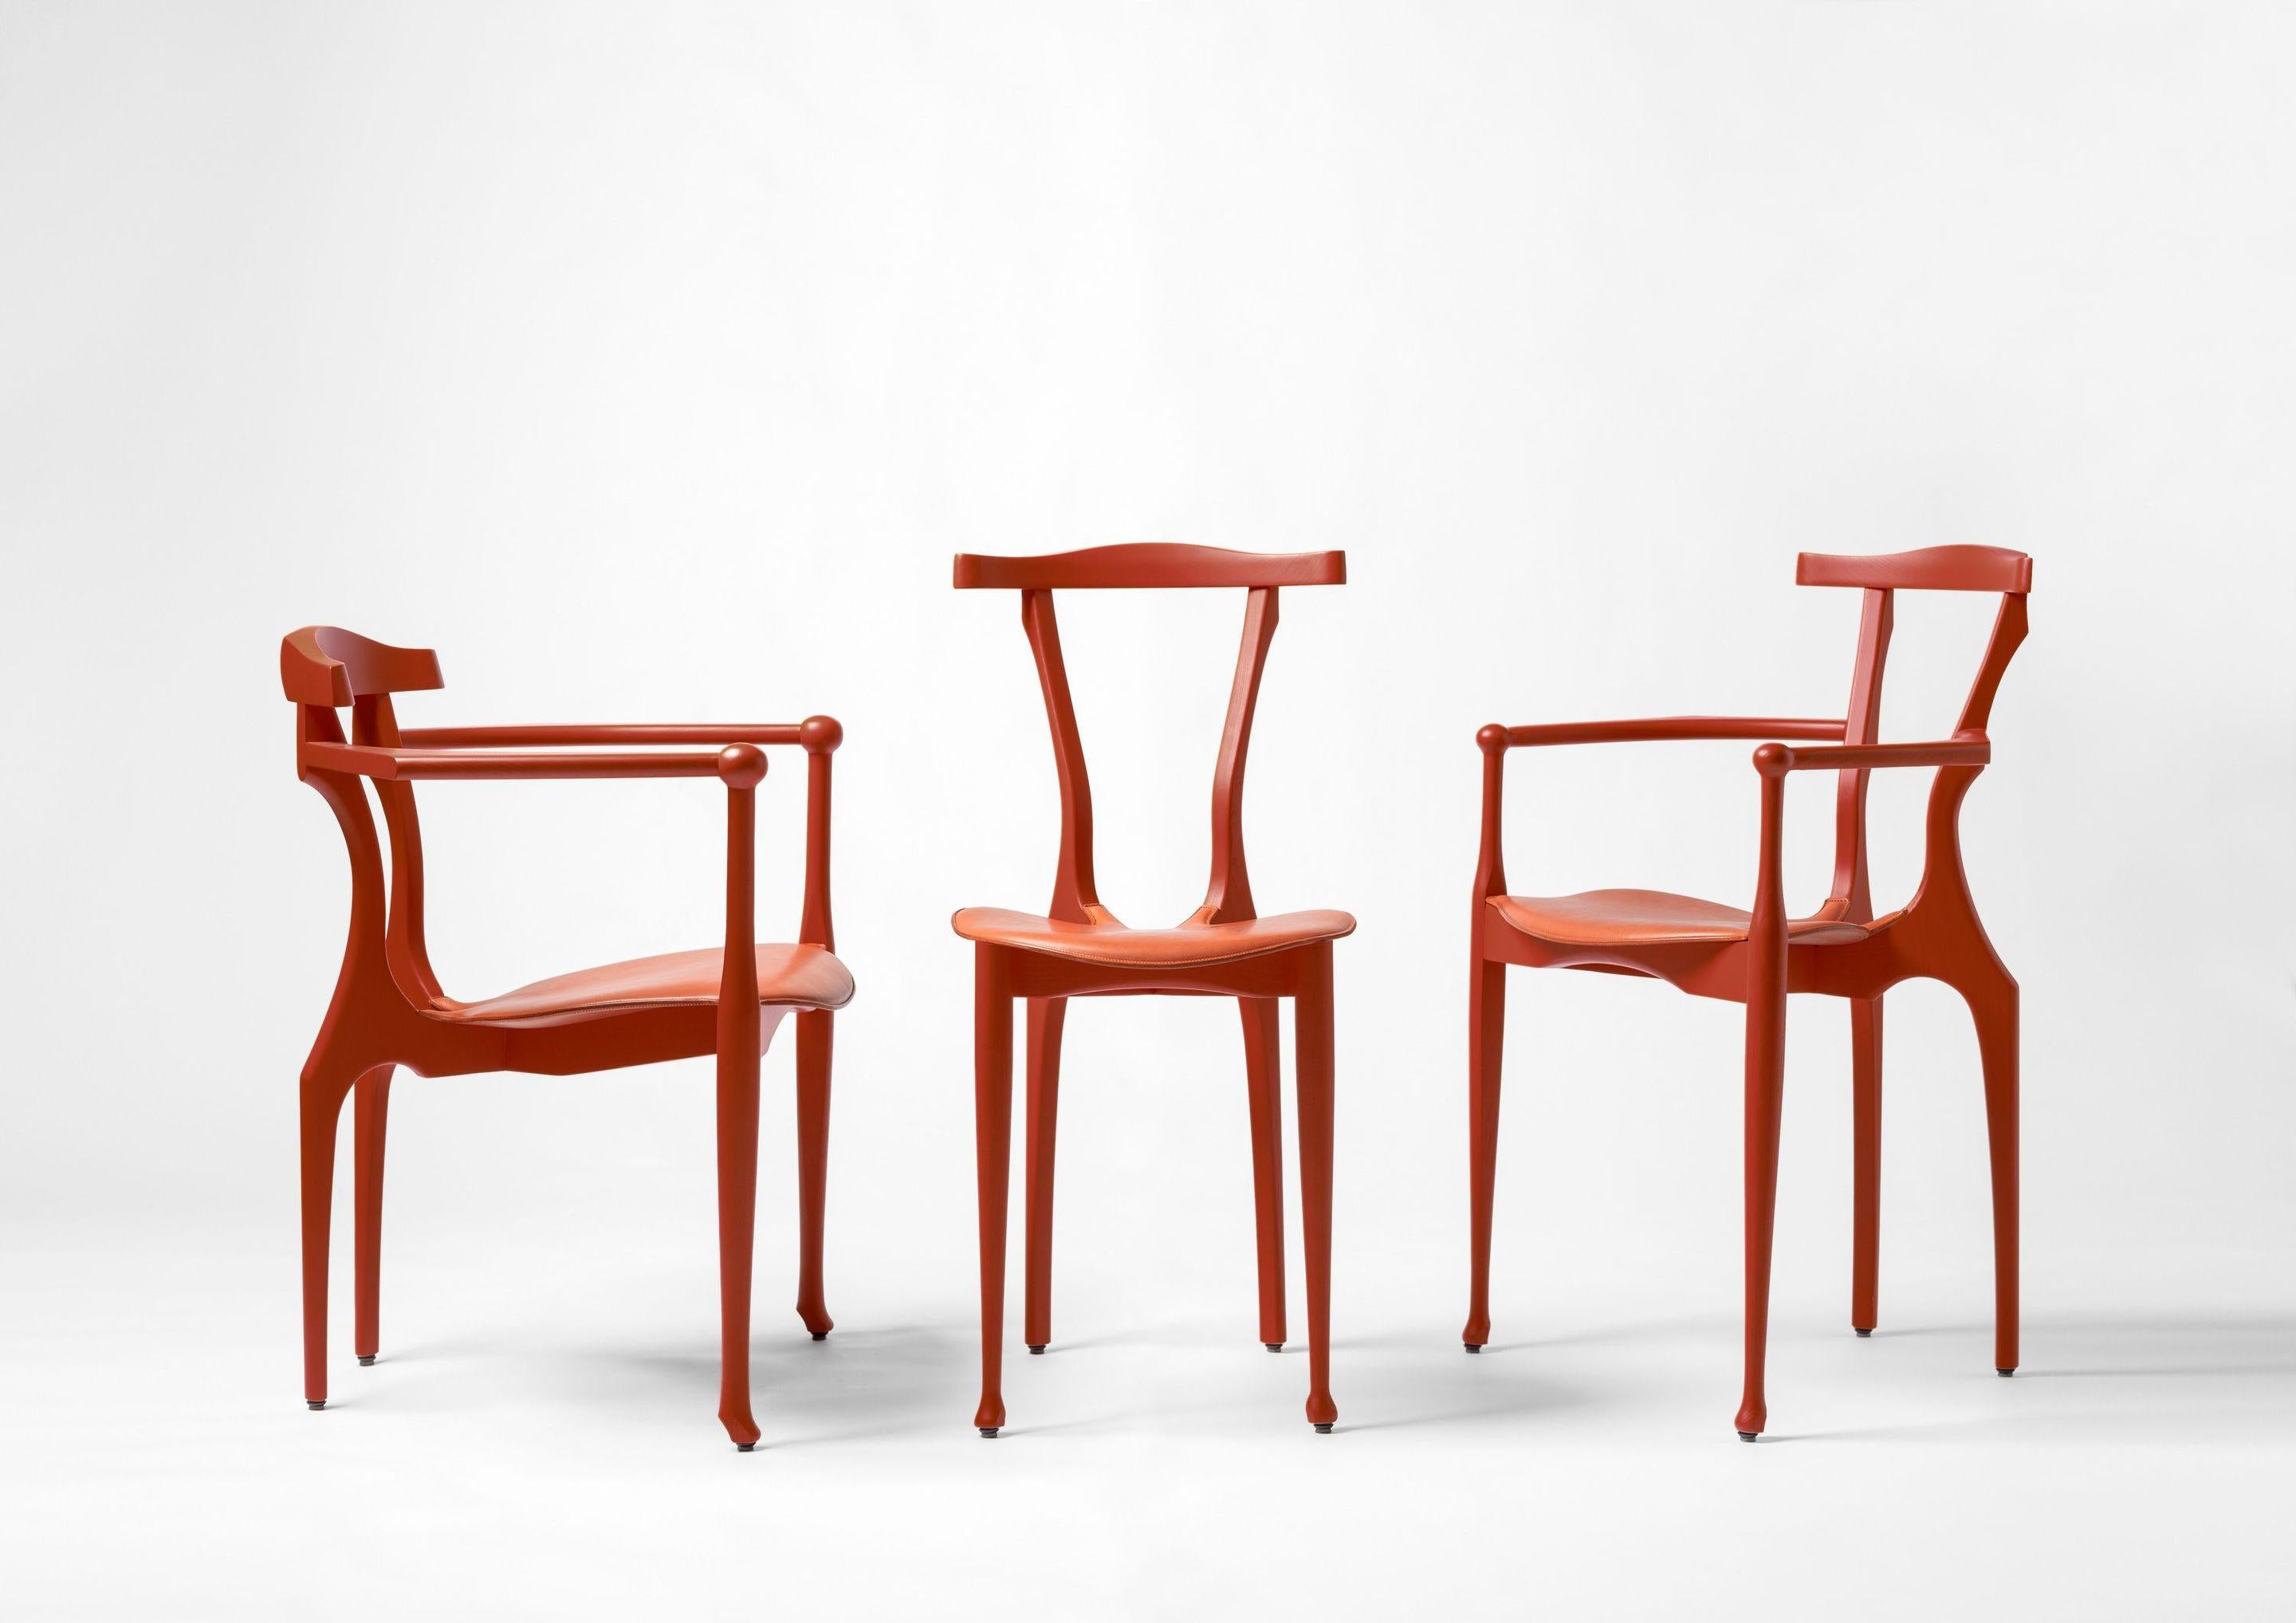 Der Gaulinetta ist eine Weiterentwicklung des Gaulino-Stuhls. Mit den Worten Oscar Tusquets: Als Hommage an Enzo Mari, der seinen Stuhl Tonietta nannte, eine Ableitung von Thonet, habe ich diesen Stuhl Gaulinetta genannt, nach dem Gaulino. 

Der